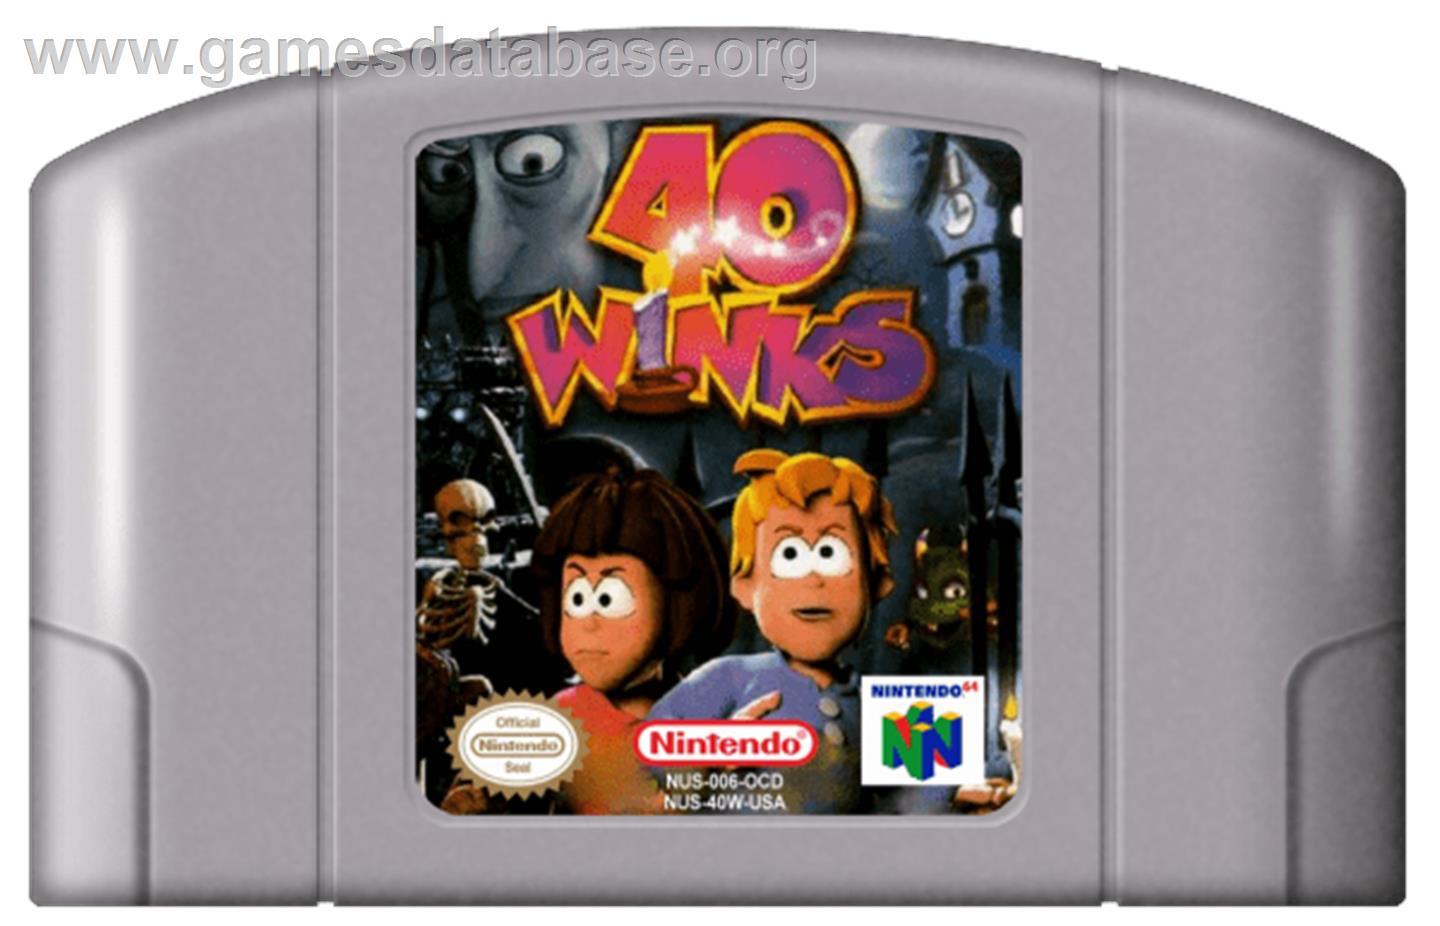 40 Winks - Nintendo N64 - Artwork - Cartridge